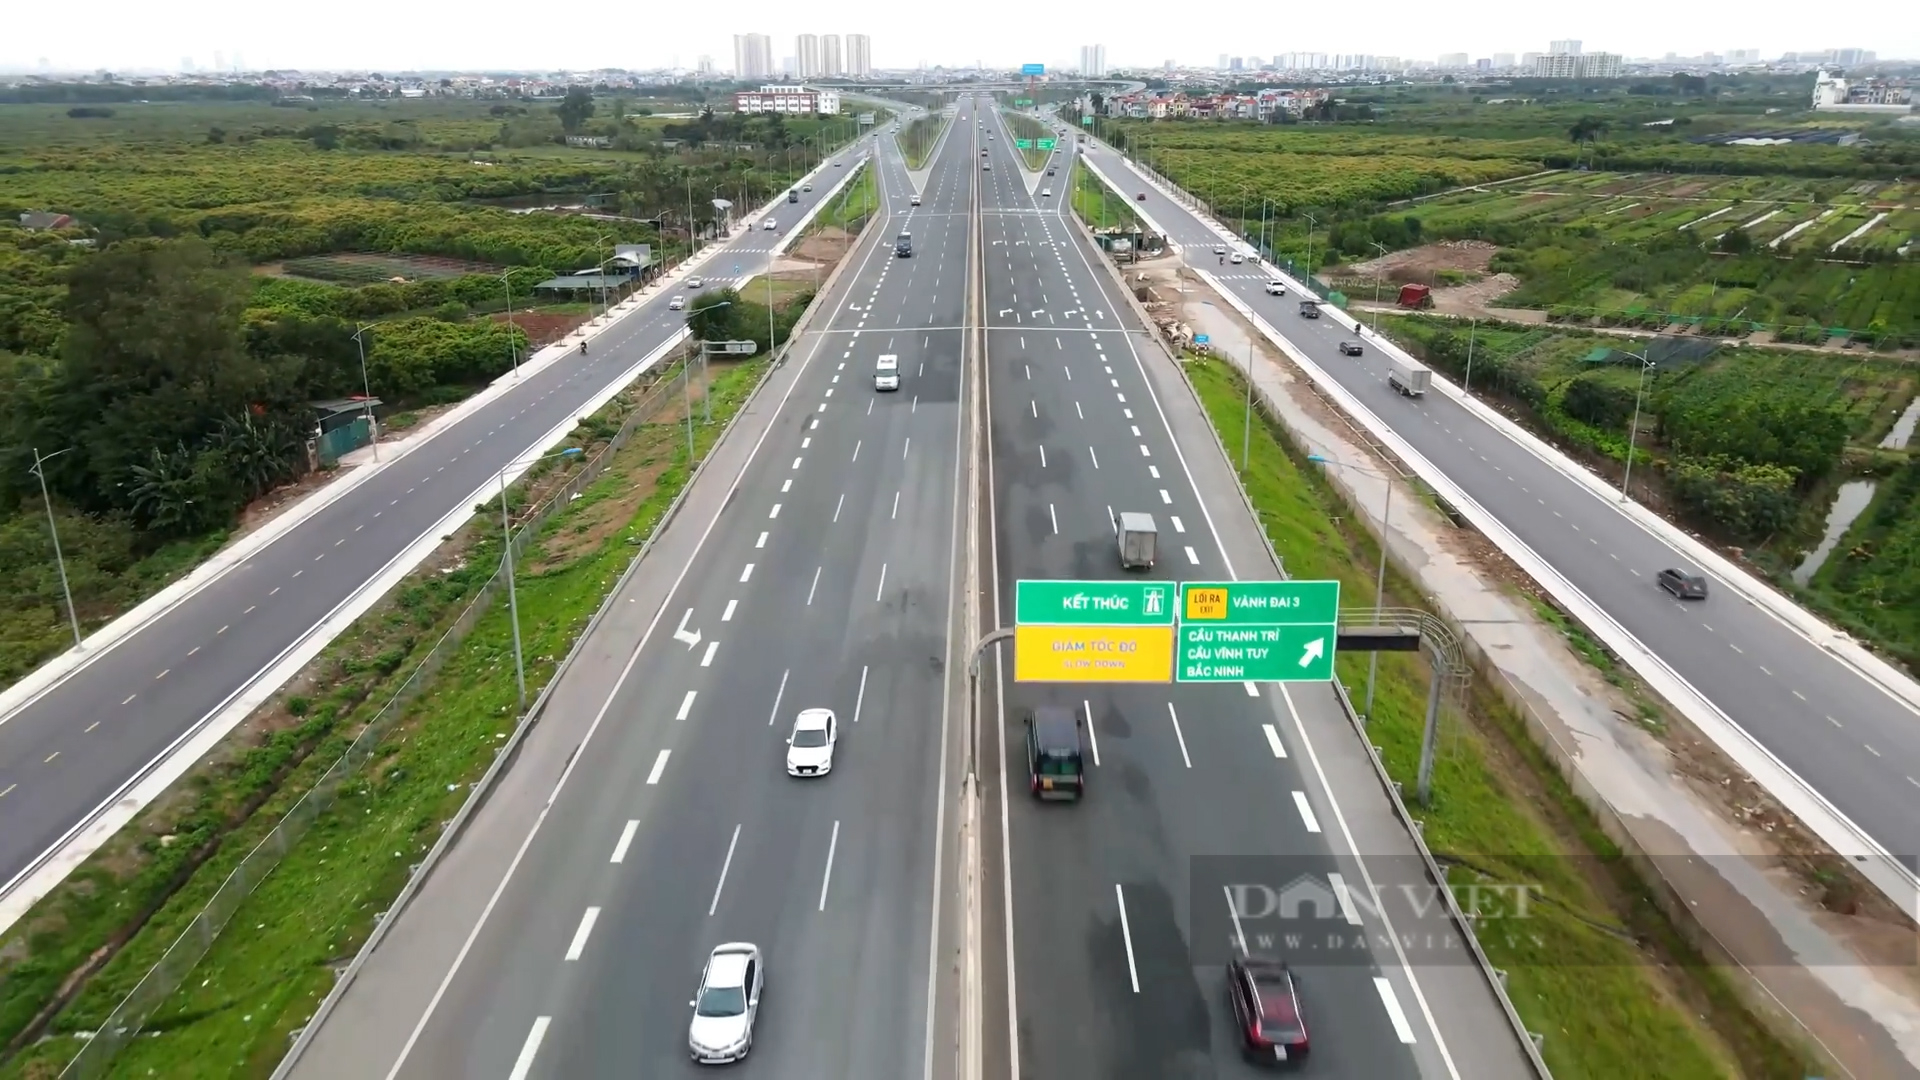 Khu vực phía đông Hà Nội hưởng lợi từ cơ sở hạ tầng giao thông phát triển (Ảnh: TN)